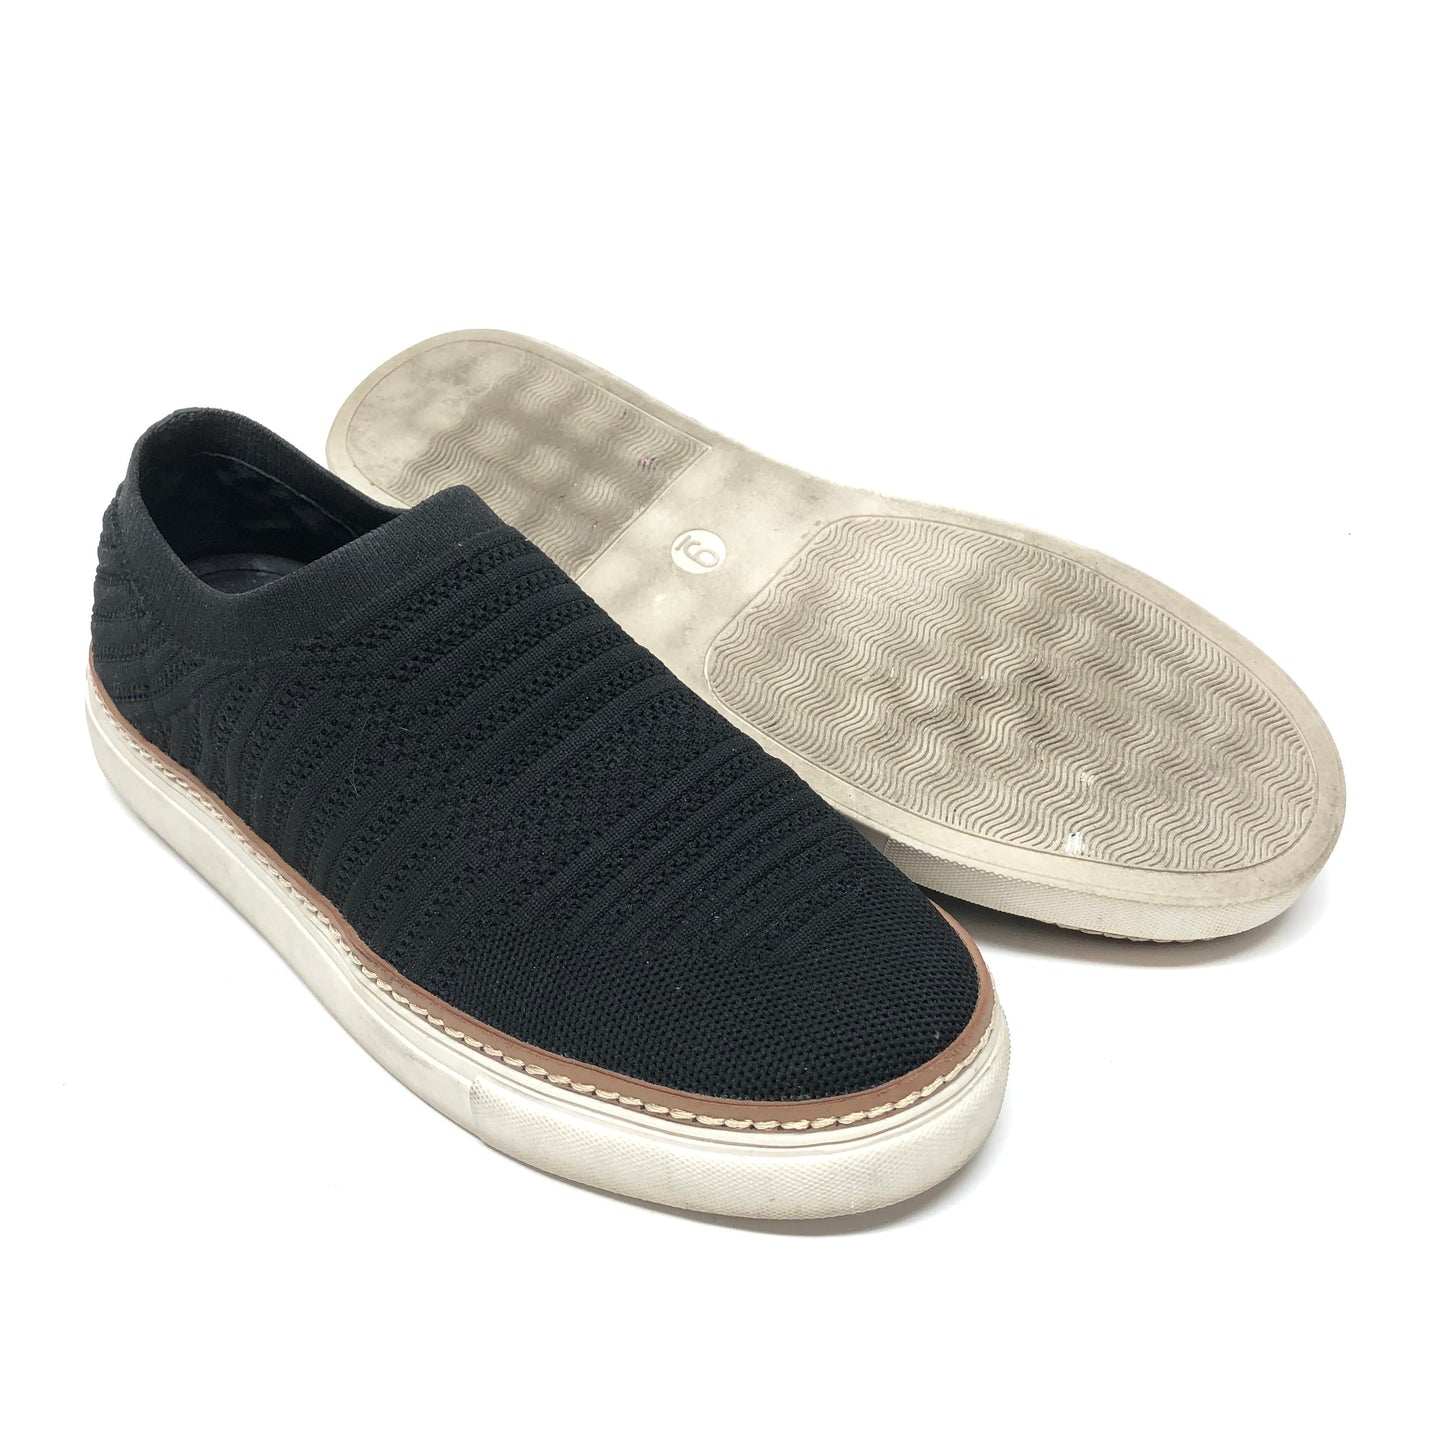 Black Shoes Flats Vince Camuto, Size 9